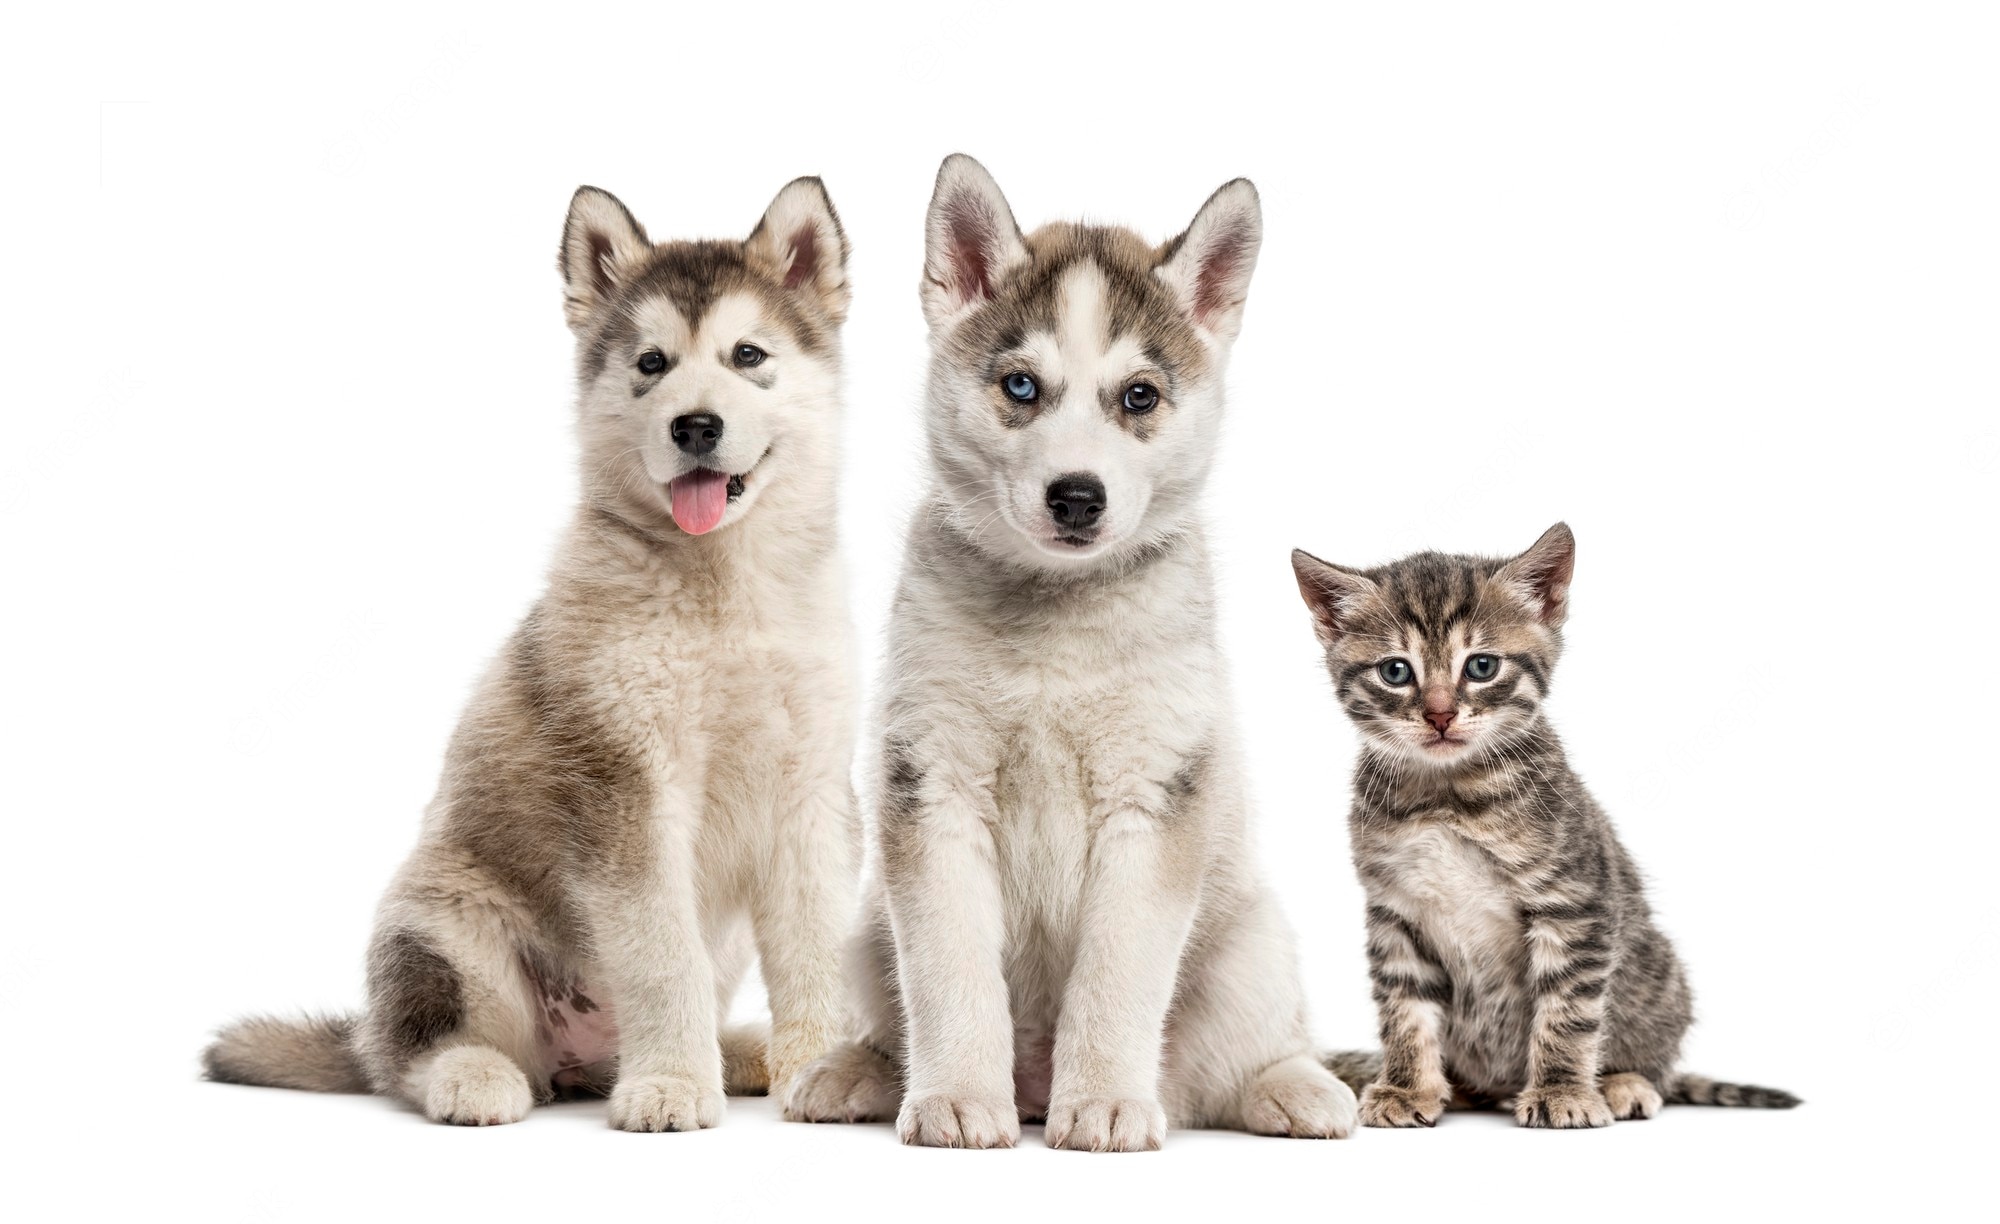 Is Pet Insurance Worth It?
